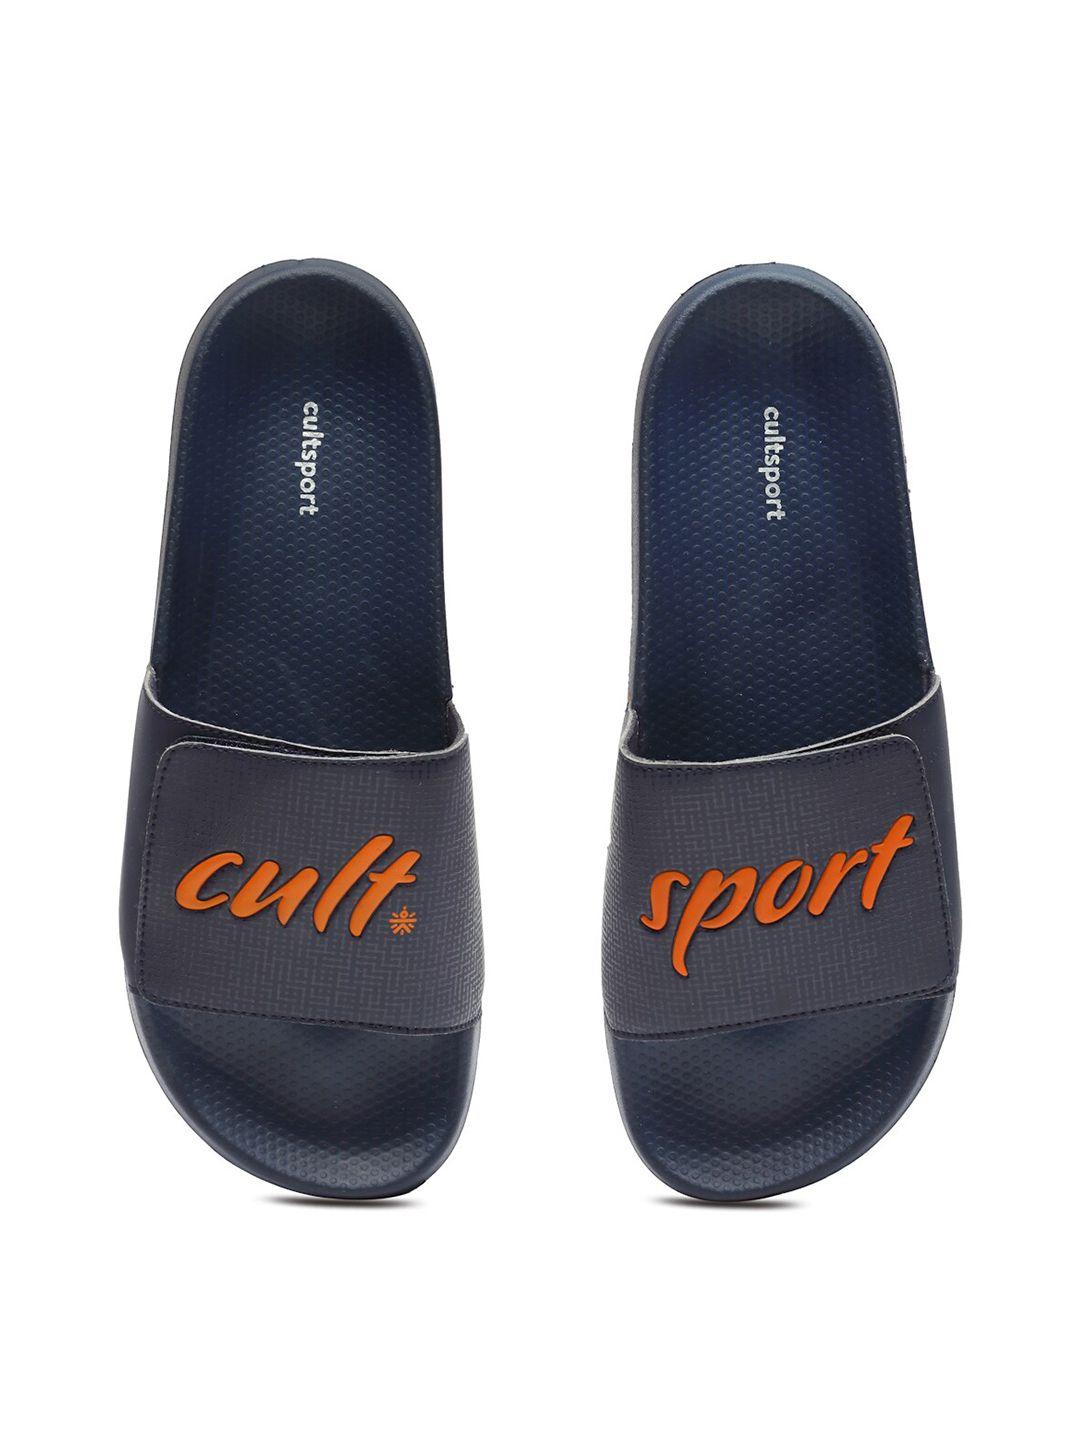 cultsport-men-navy-blue-flip-flops